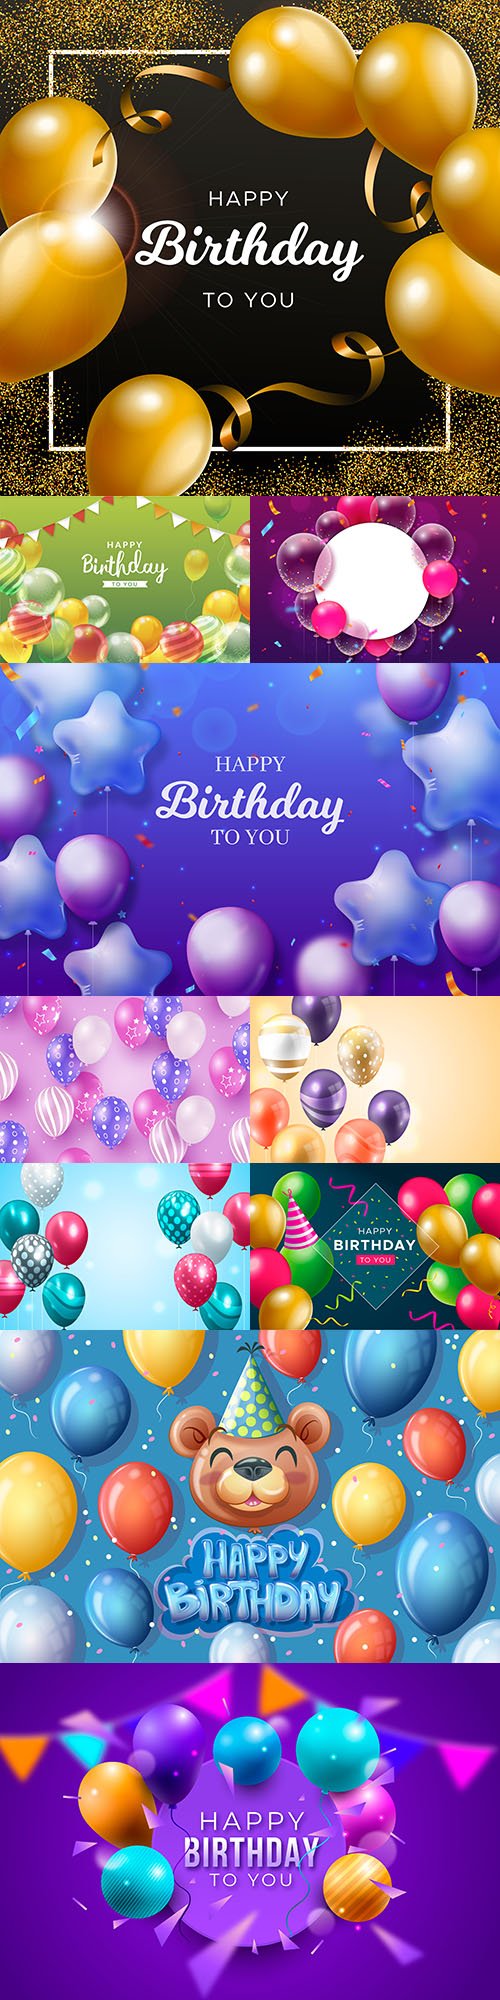 Happy birthday holiday invitation realistic balloons 3